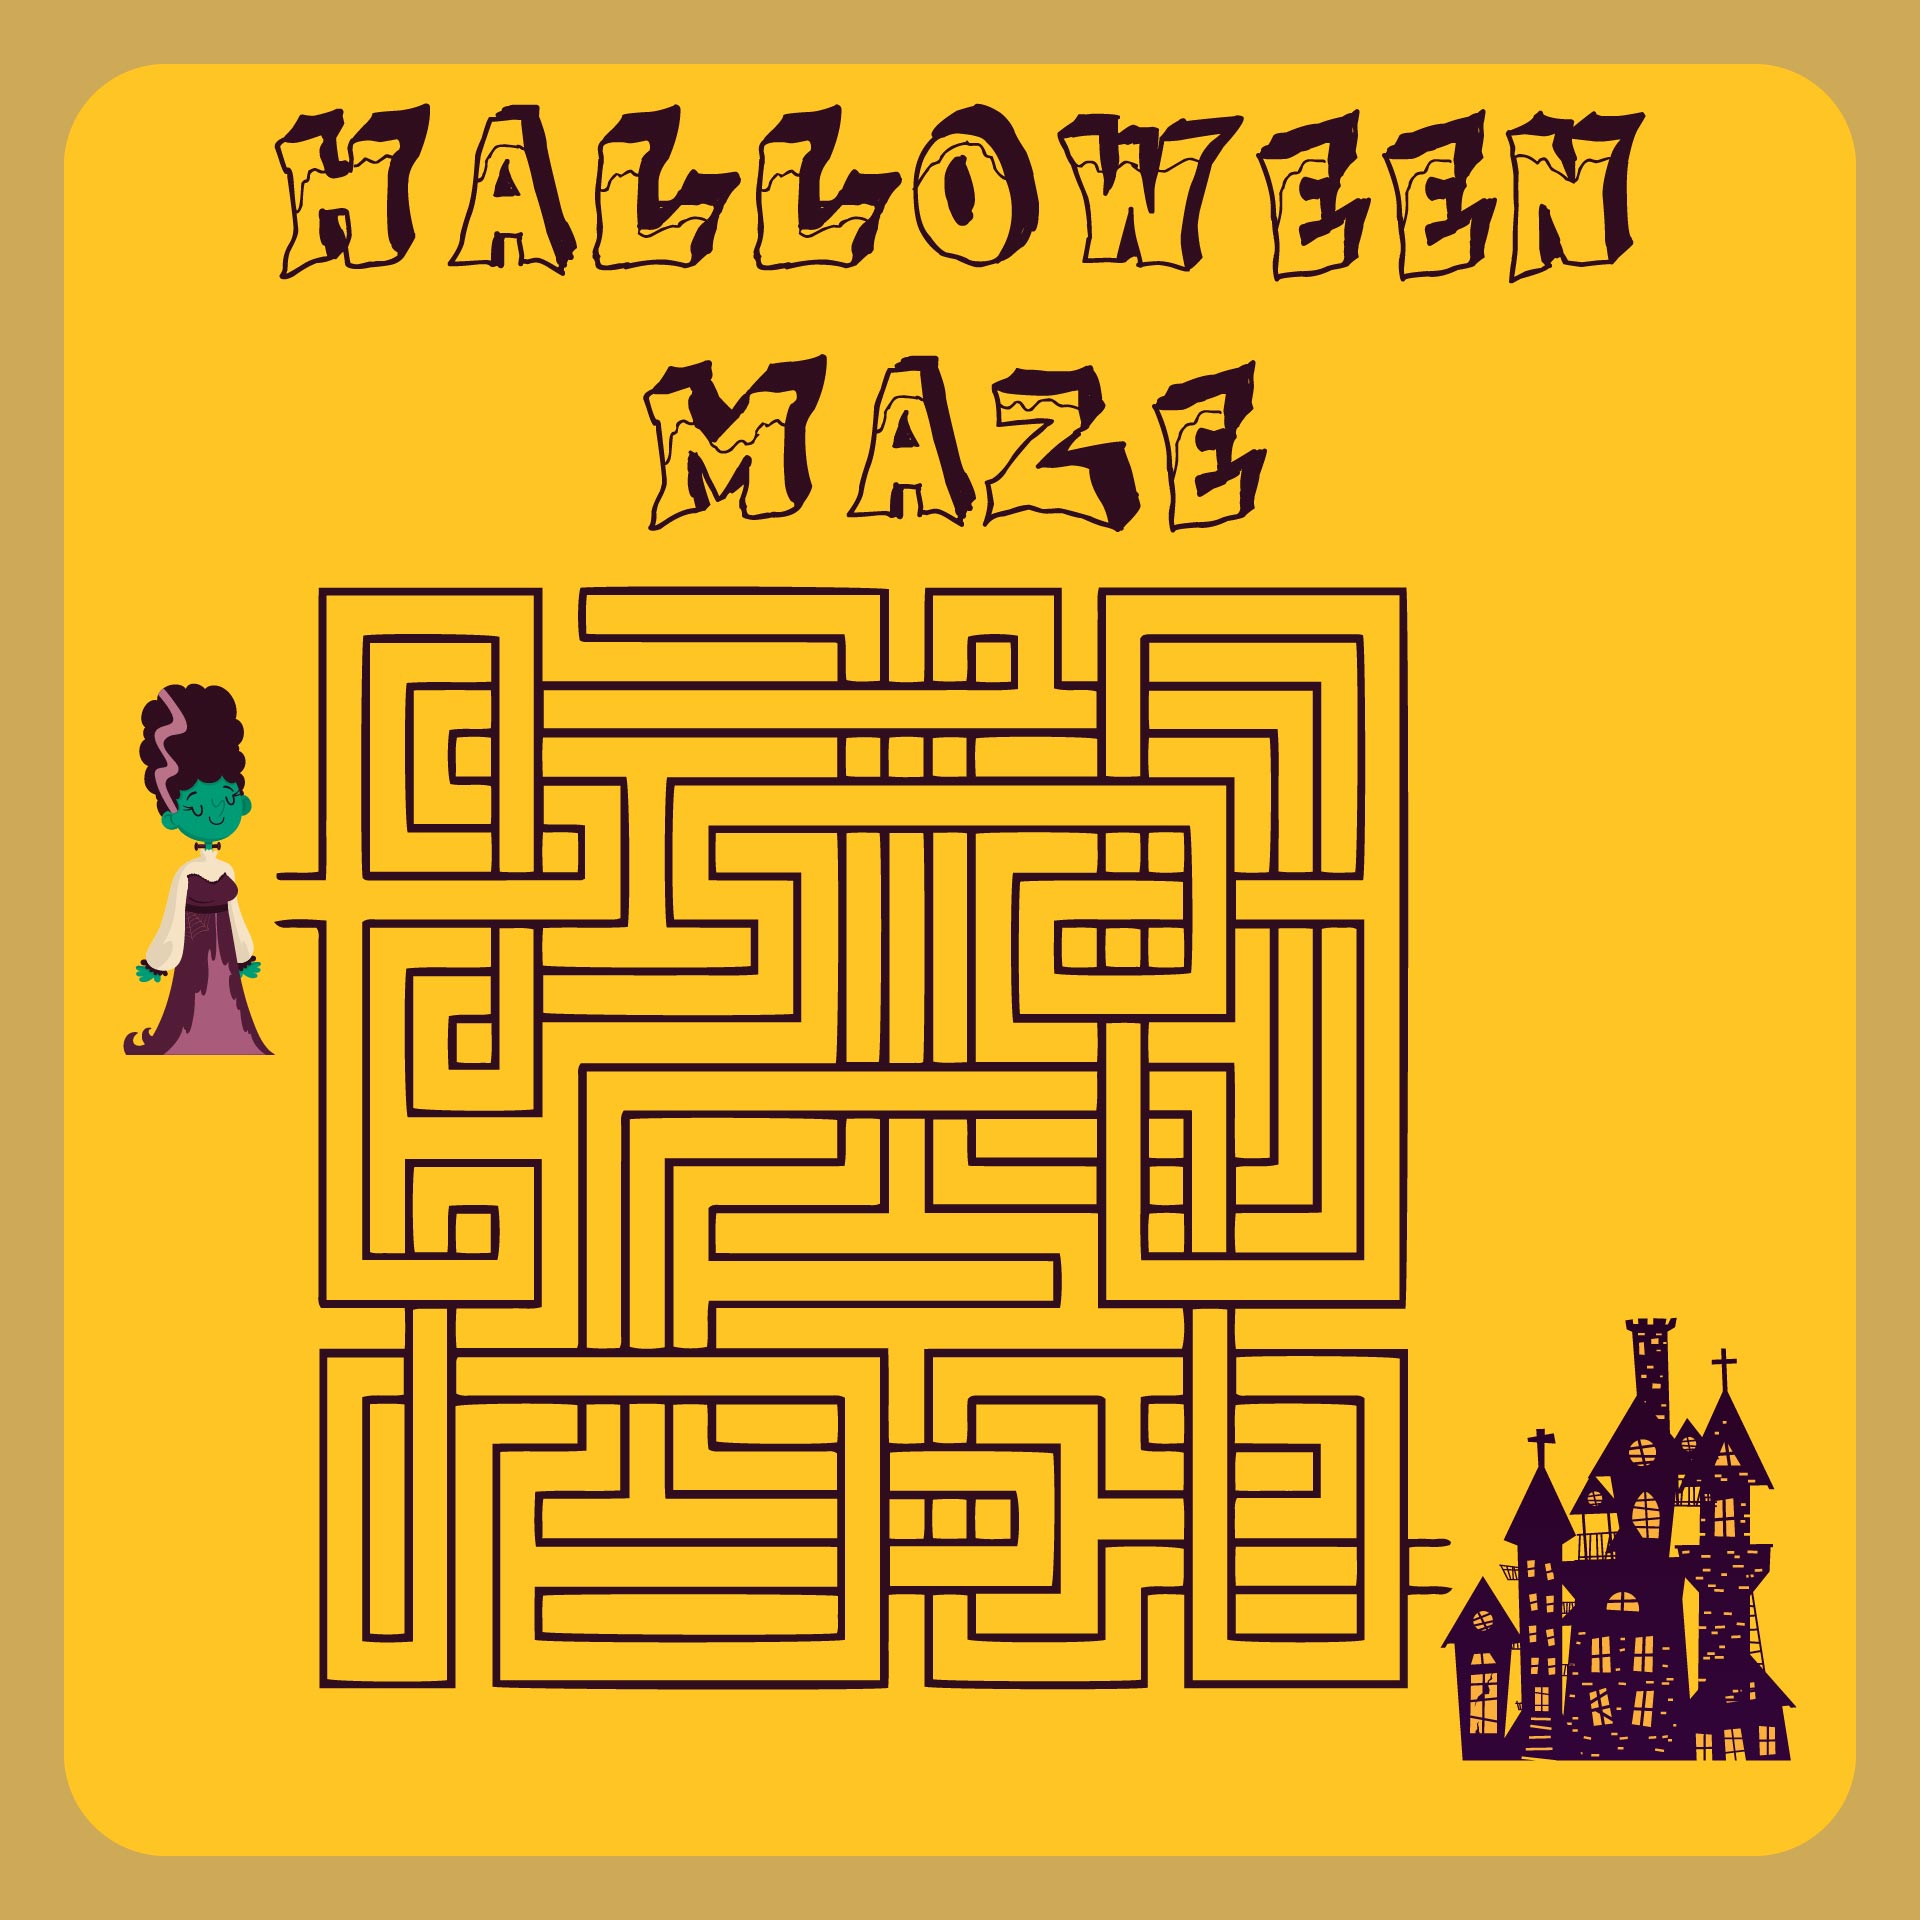 Free Printable Halloween Mazes